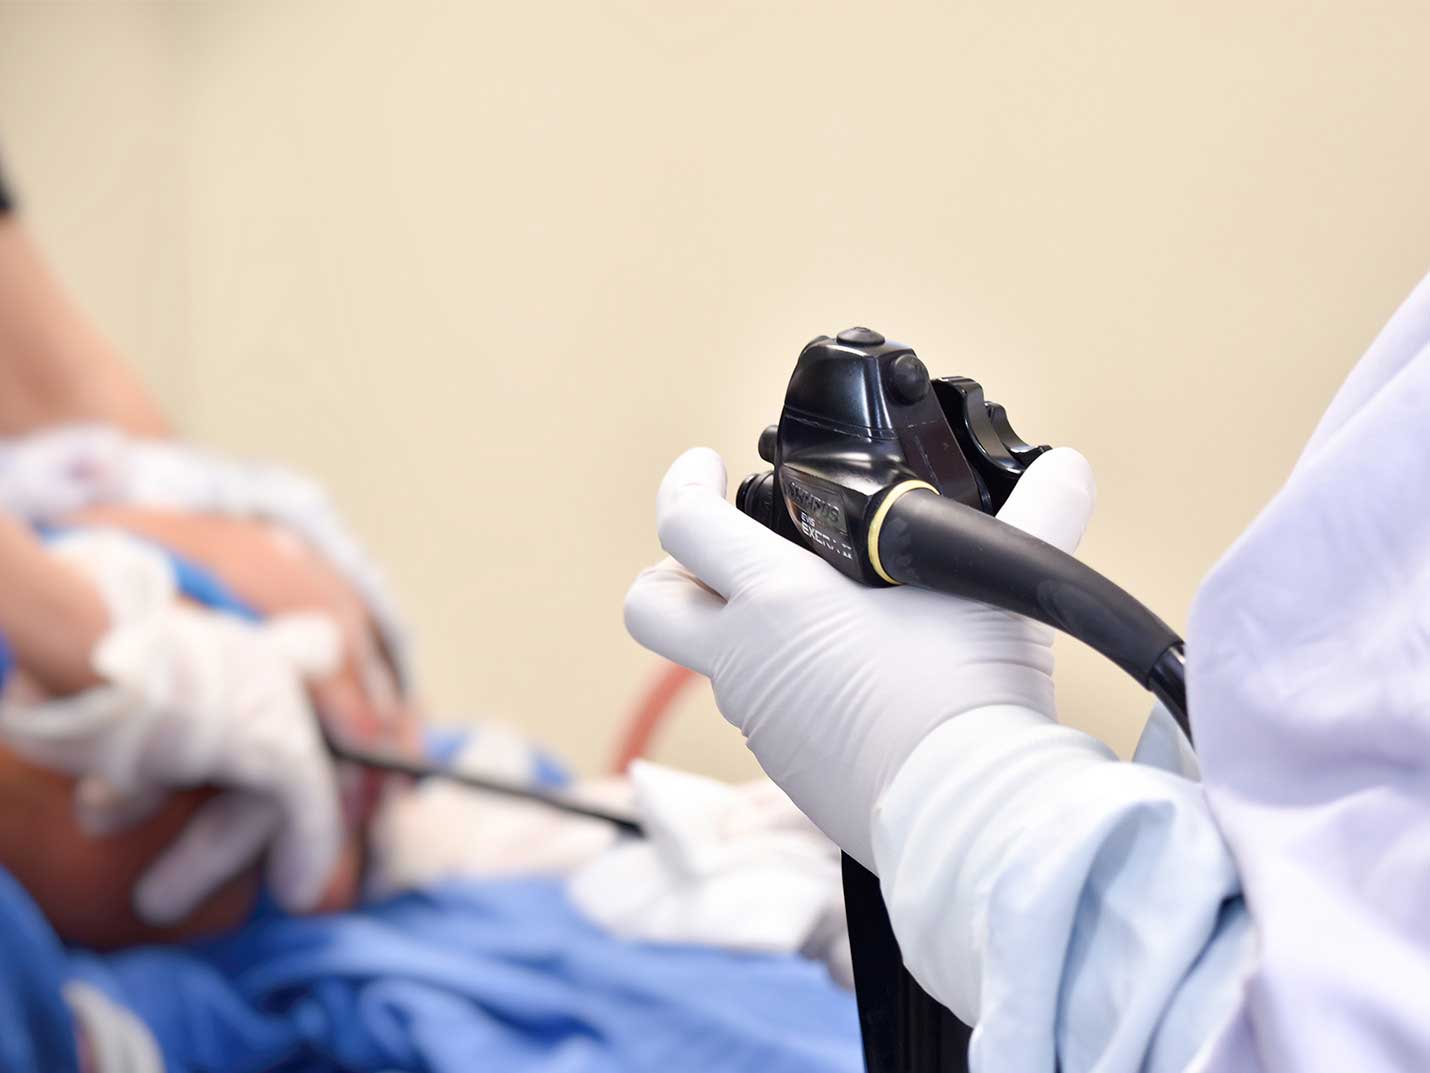 Mano de un médico con un guante blanco, sosteniendo un endoscopio negro. Al fondo está otro médico sujetando la cabeza de un paciente